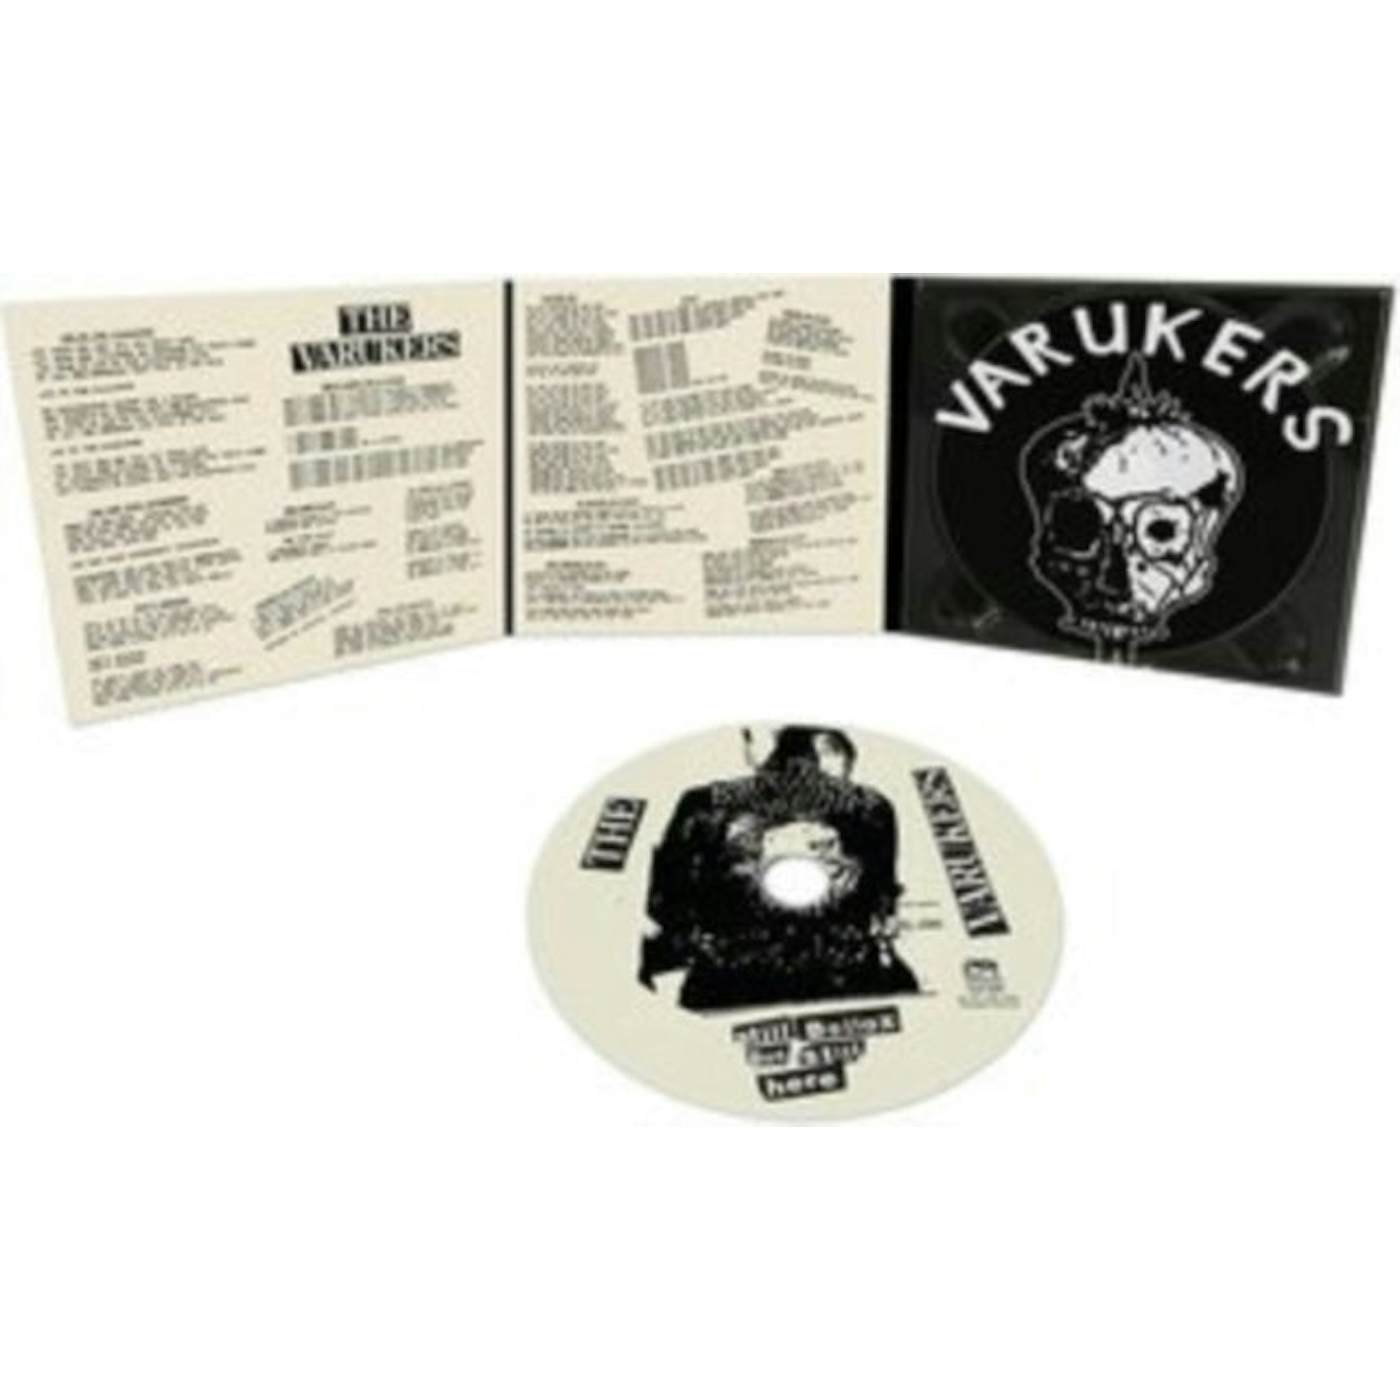 The Varukers CD - Still Bollox But Still Here